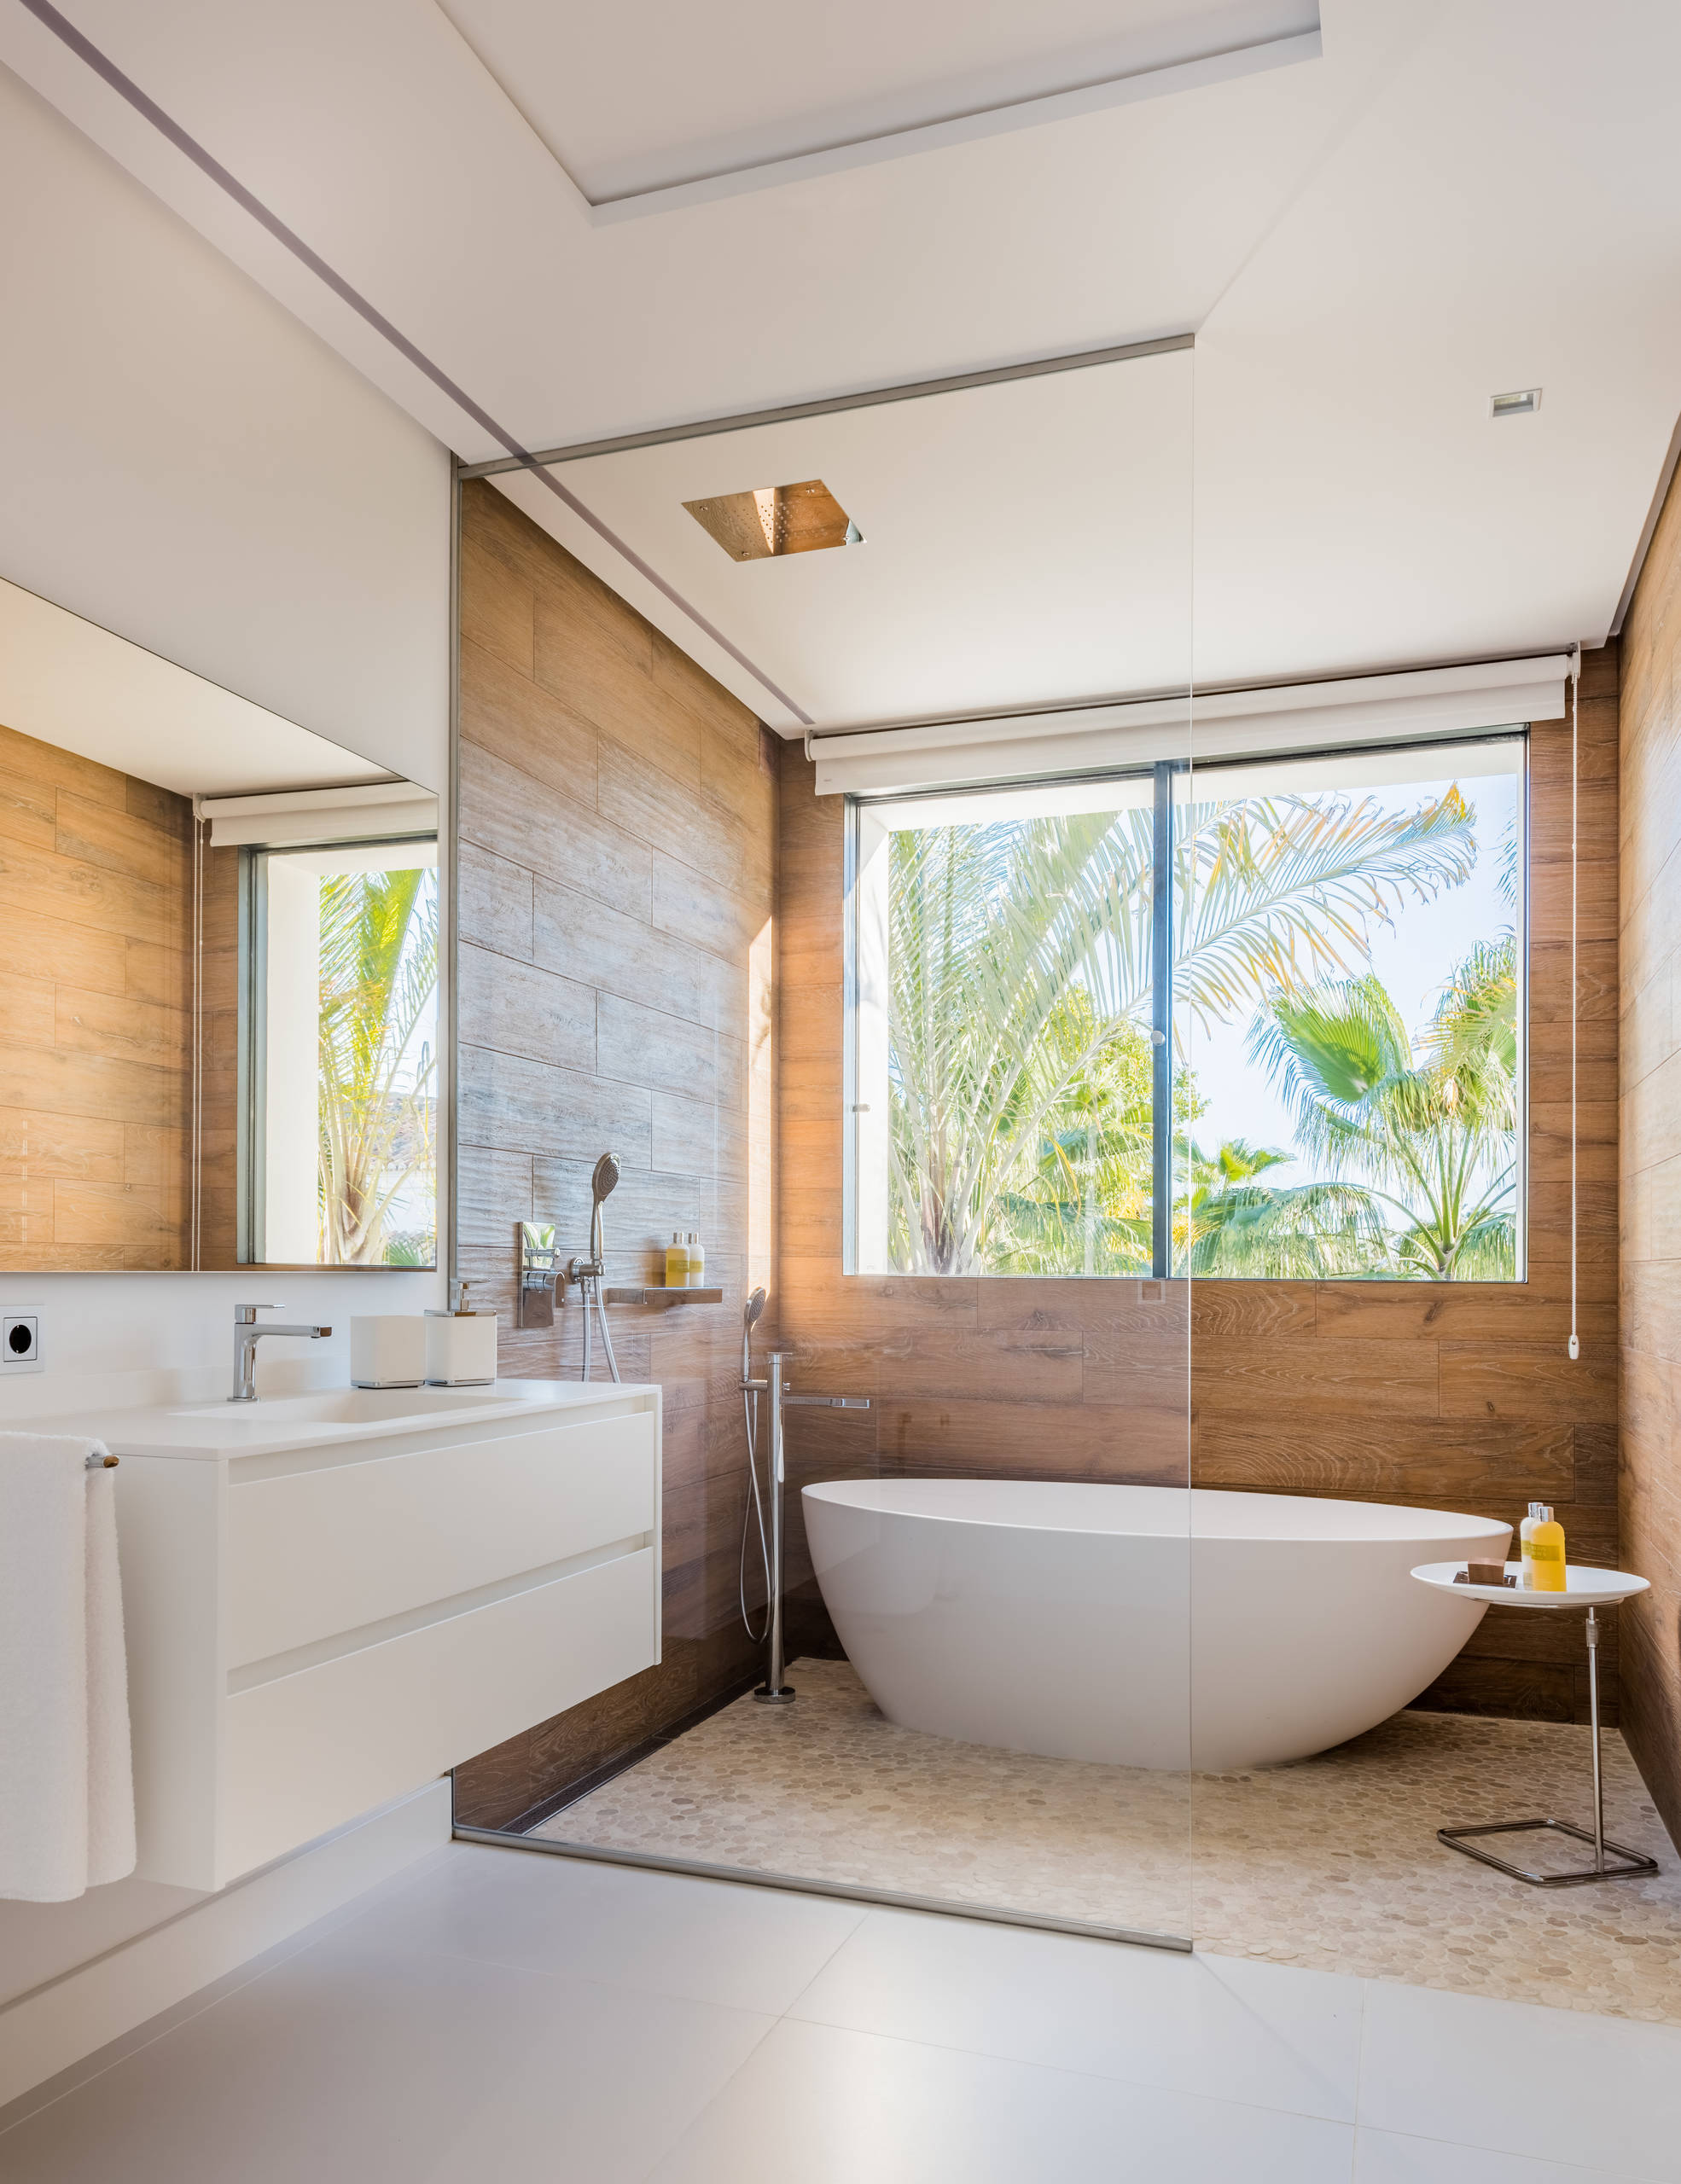 Por favor mira localizar golondrina Baños sin bañera – Ideas para decorar diseños residenciales